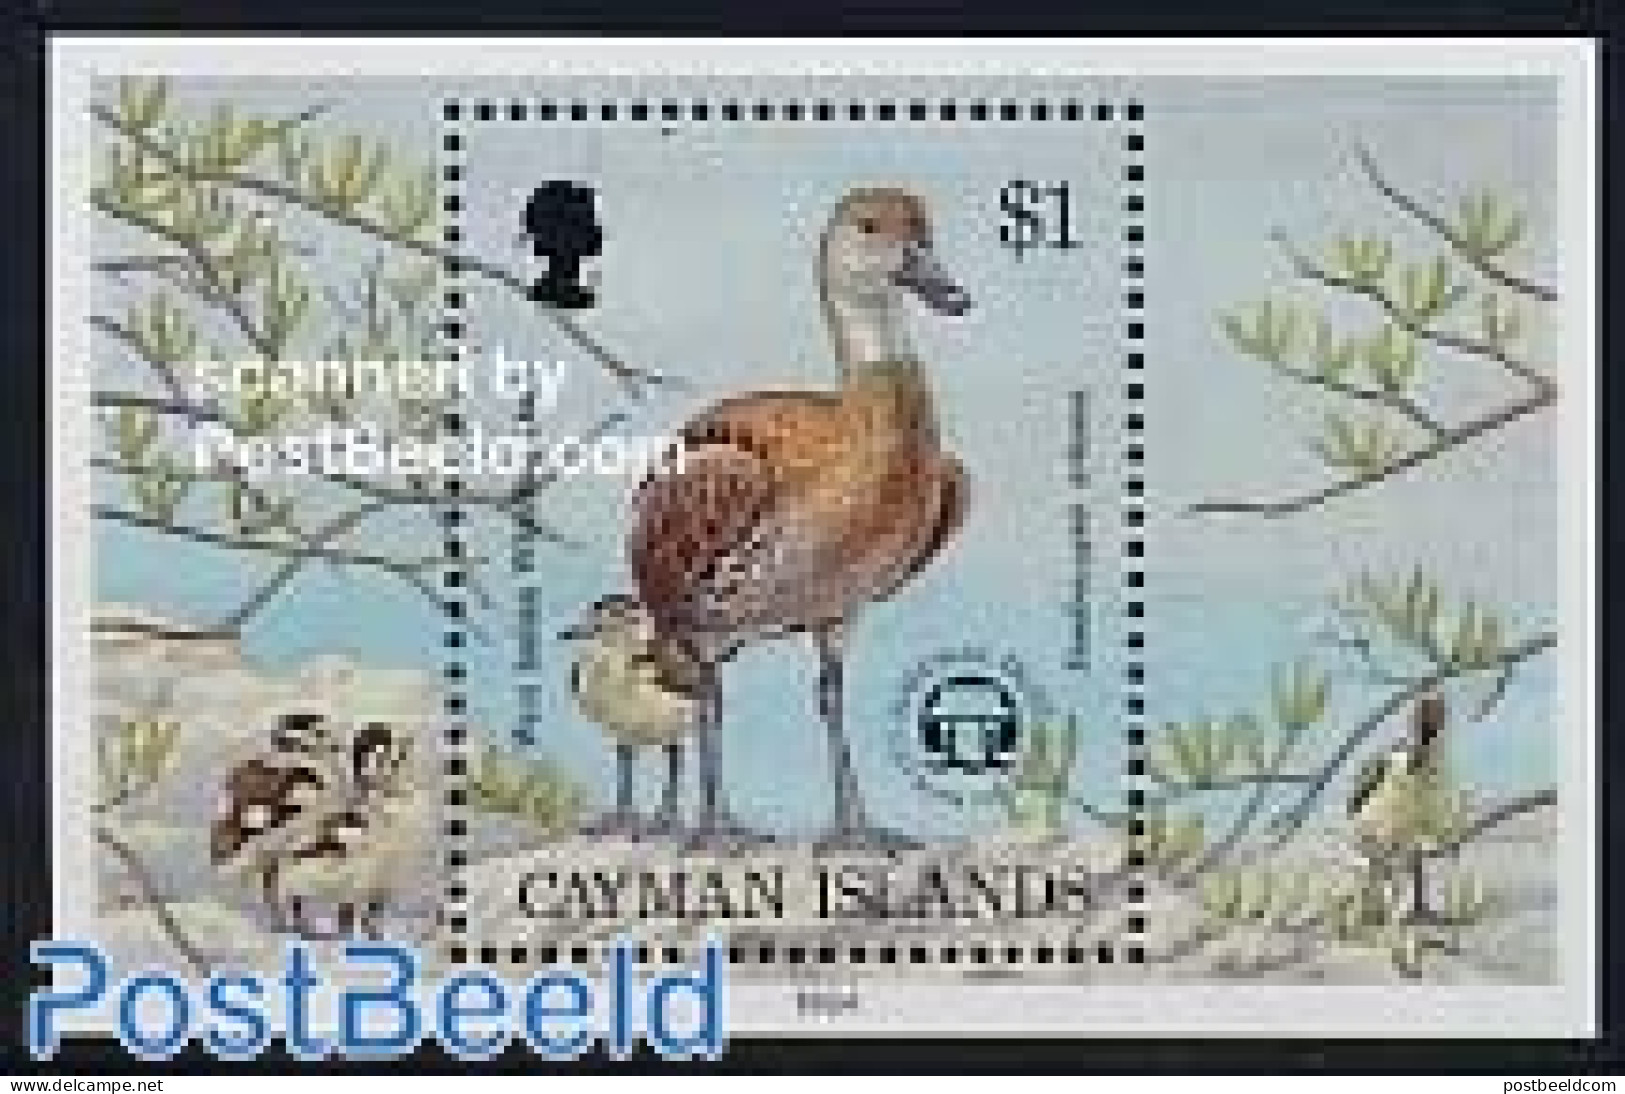 Cayman Islands 1994 Birds S/s, Mint NH, Nature - Birds - Caimán (Islas)